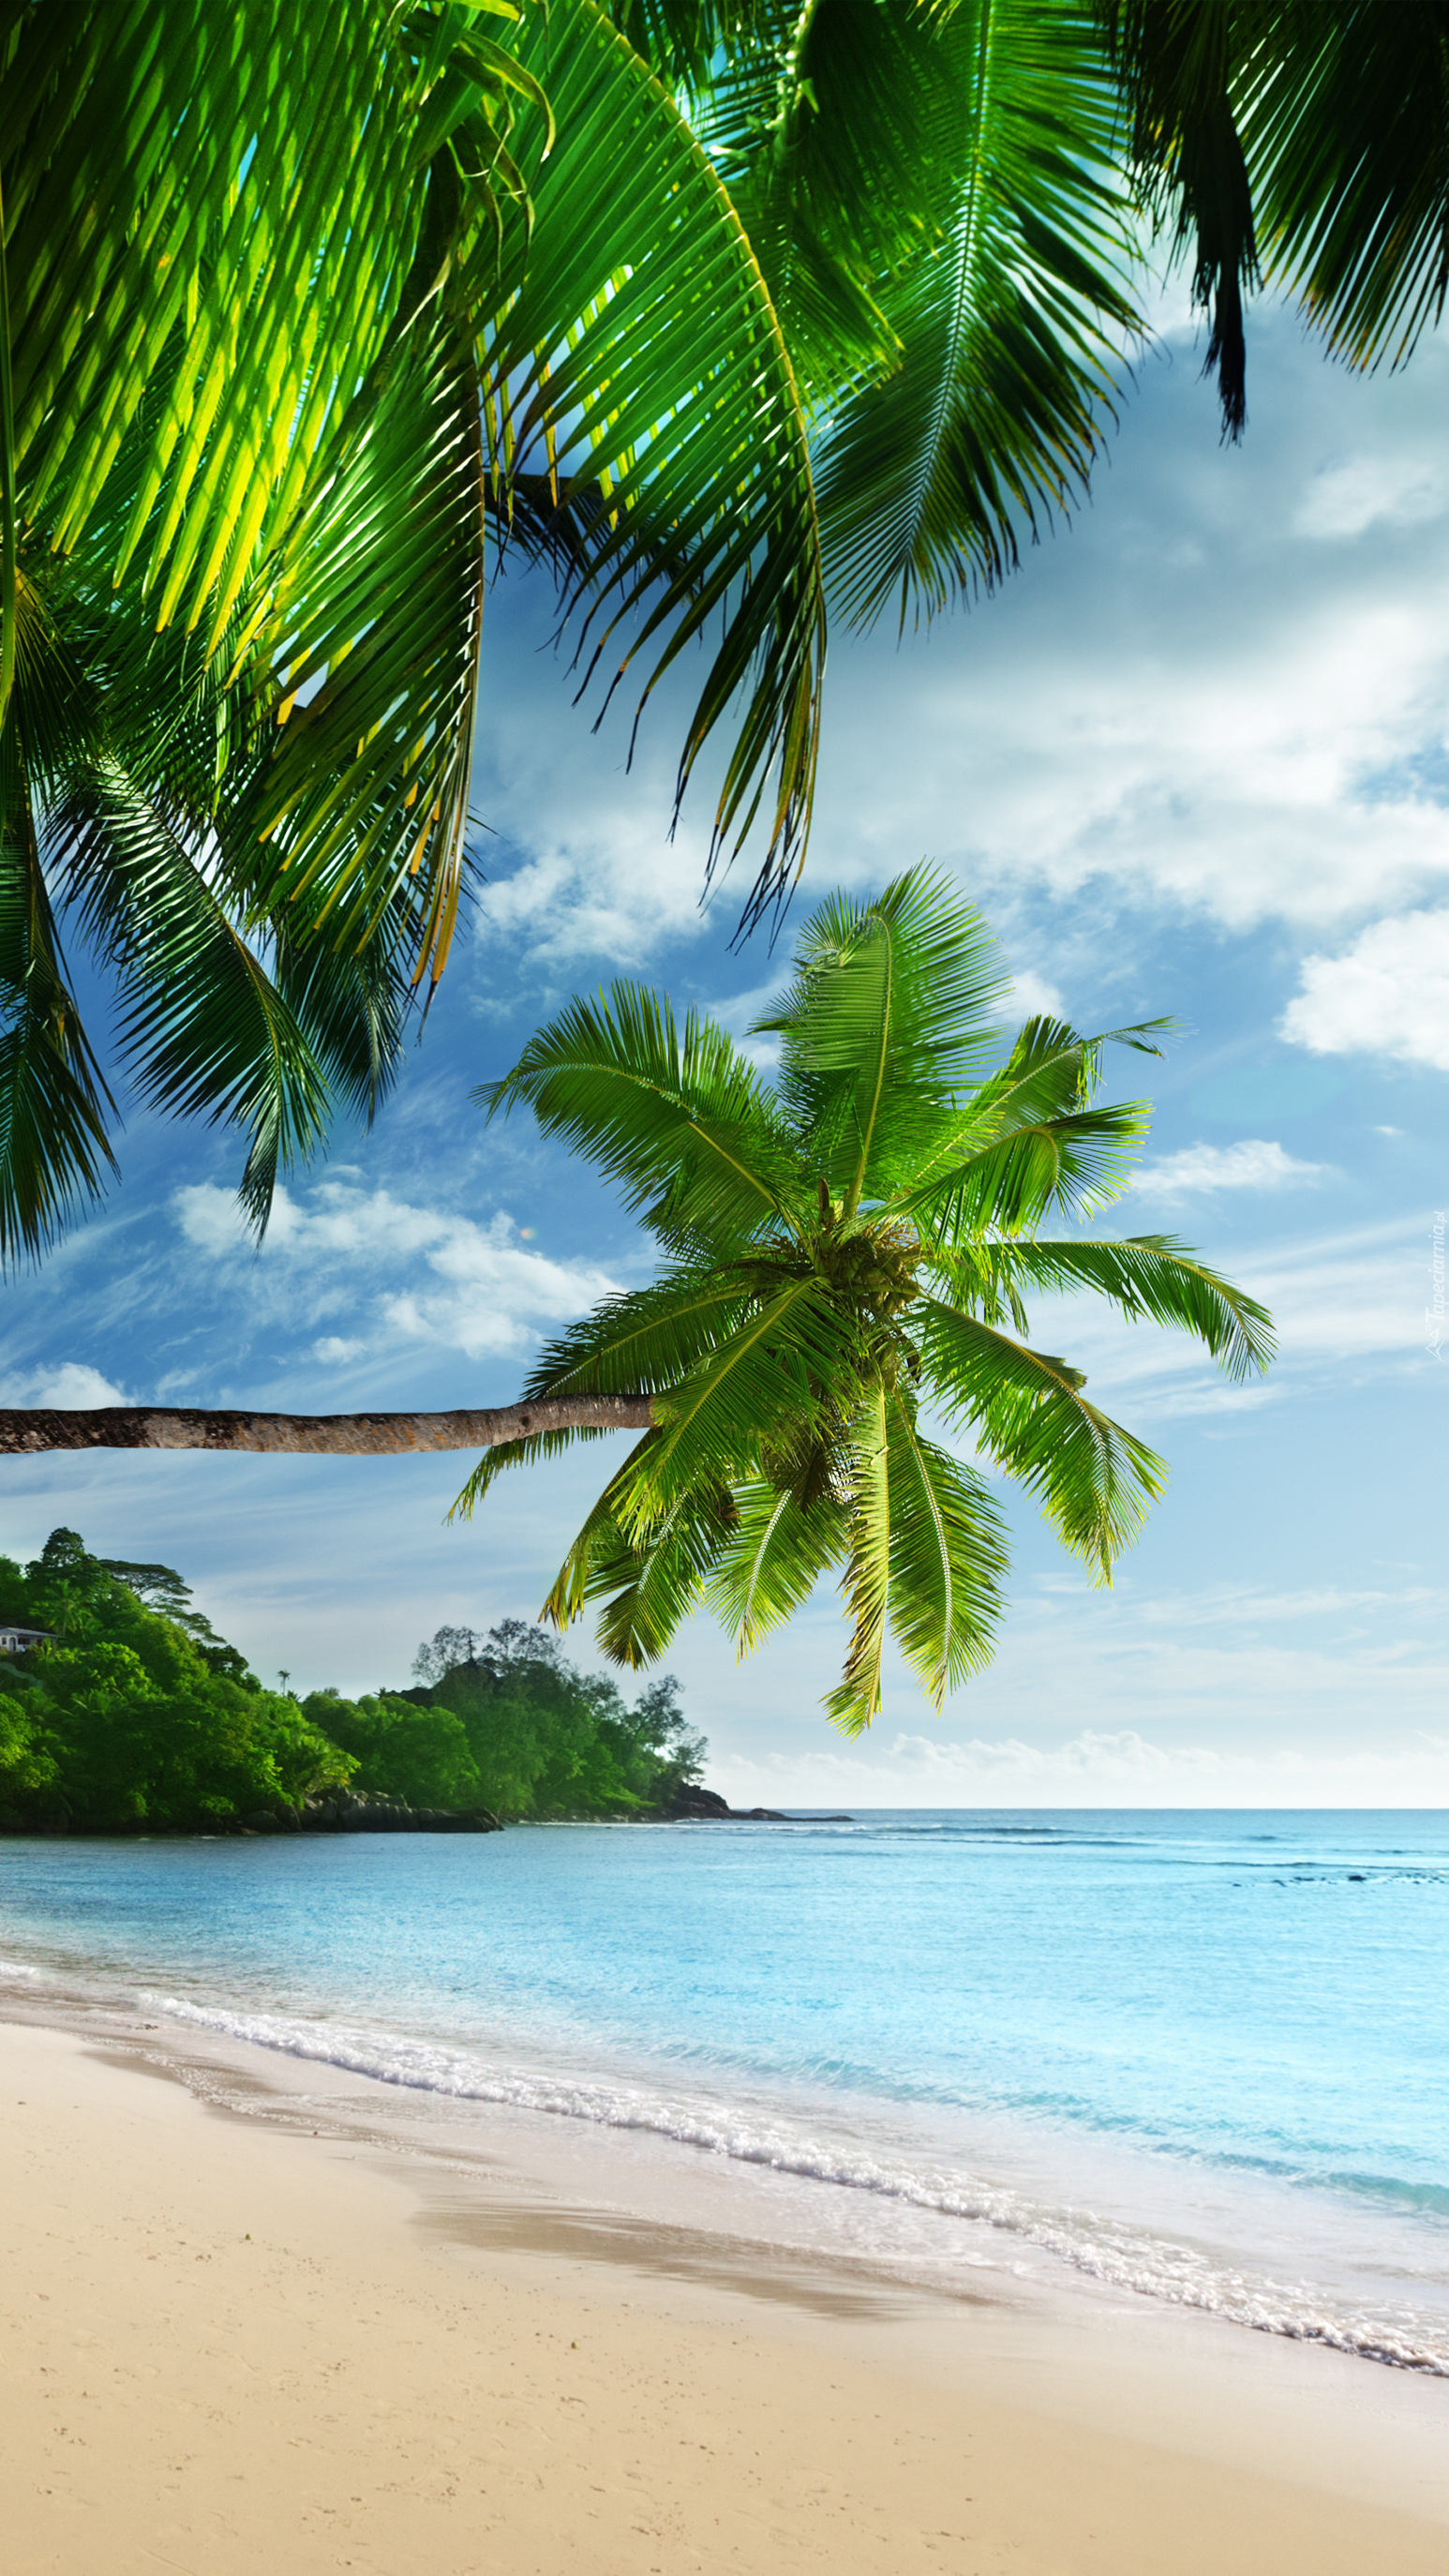 Plaża pod palmami